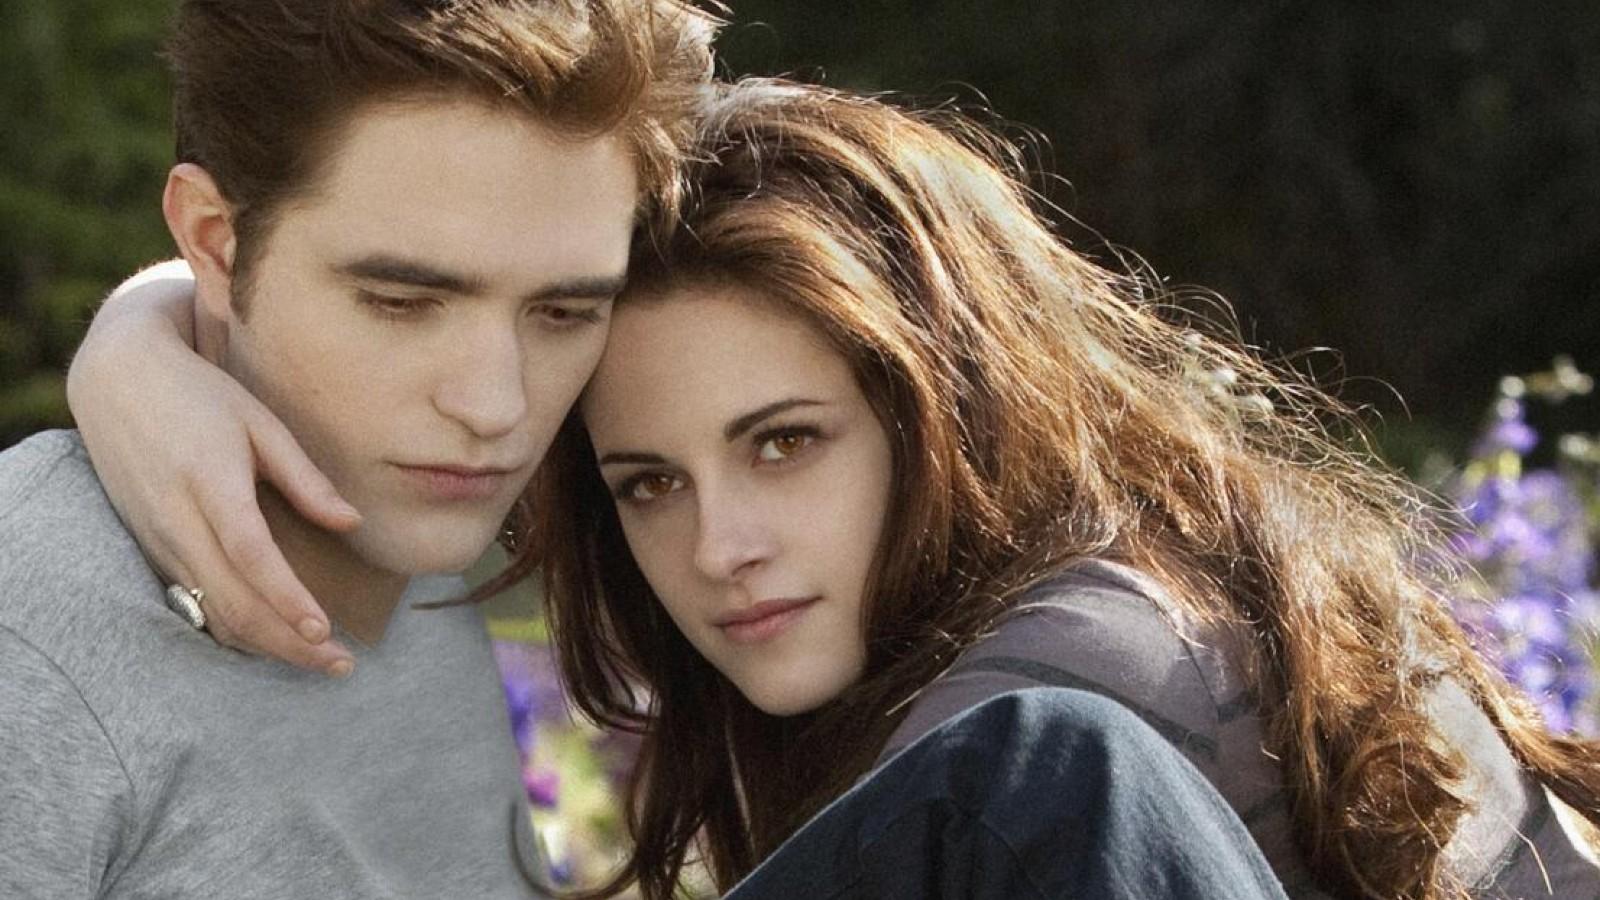 Kristen Stewart with her arm around Robert Pattinson in Twilight.